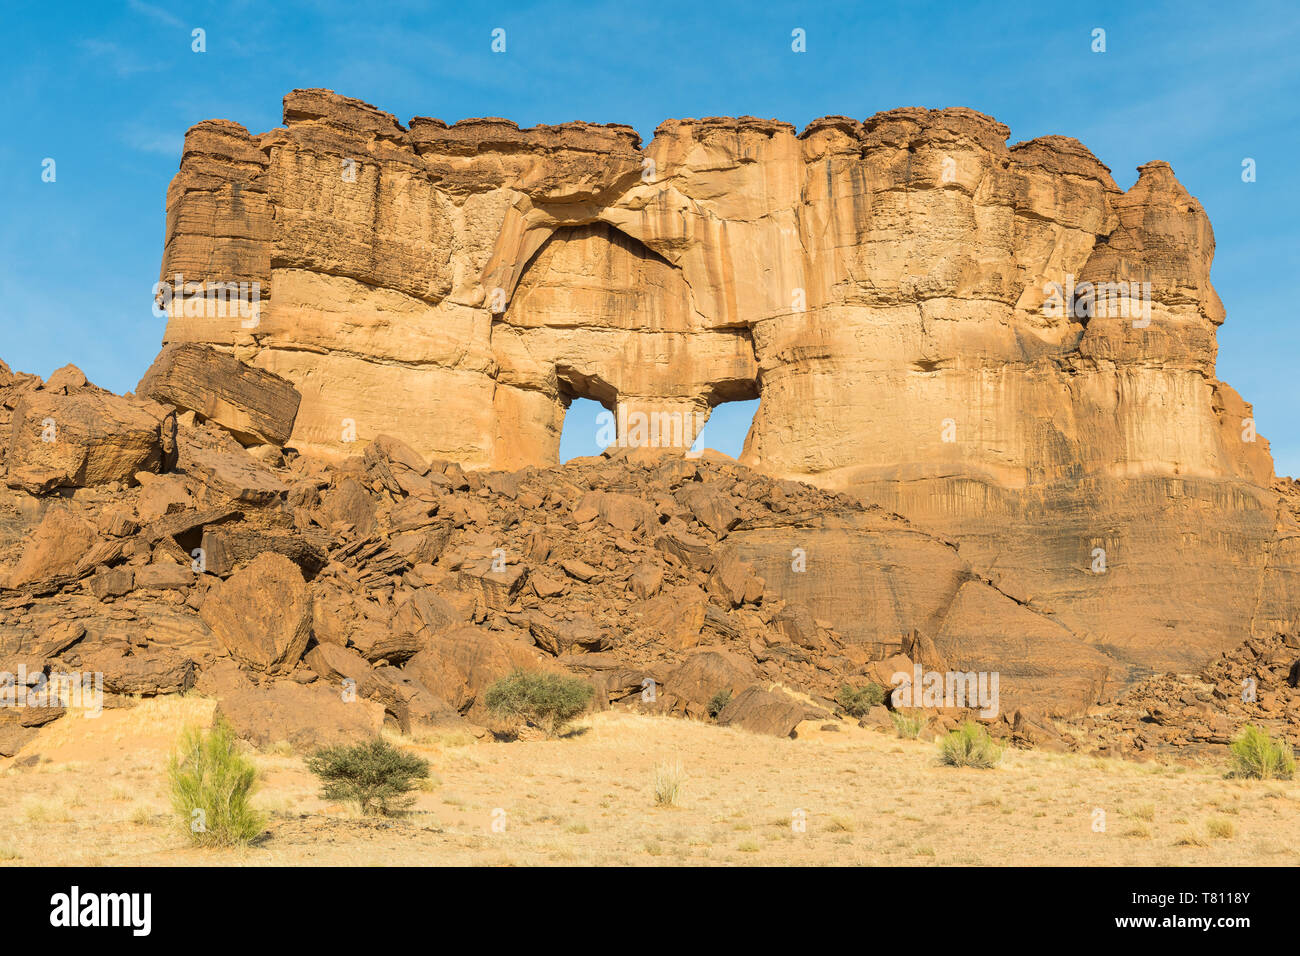 La ventana de arco de roca en la meseta de Ennedi, Sitio del Patrimonio Mundial de la UNESCO, la región de Ennedi, Chad, África Foto de stock